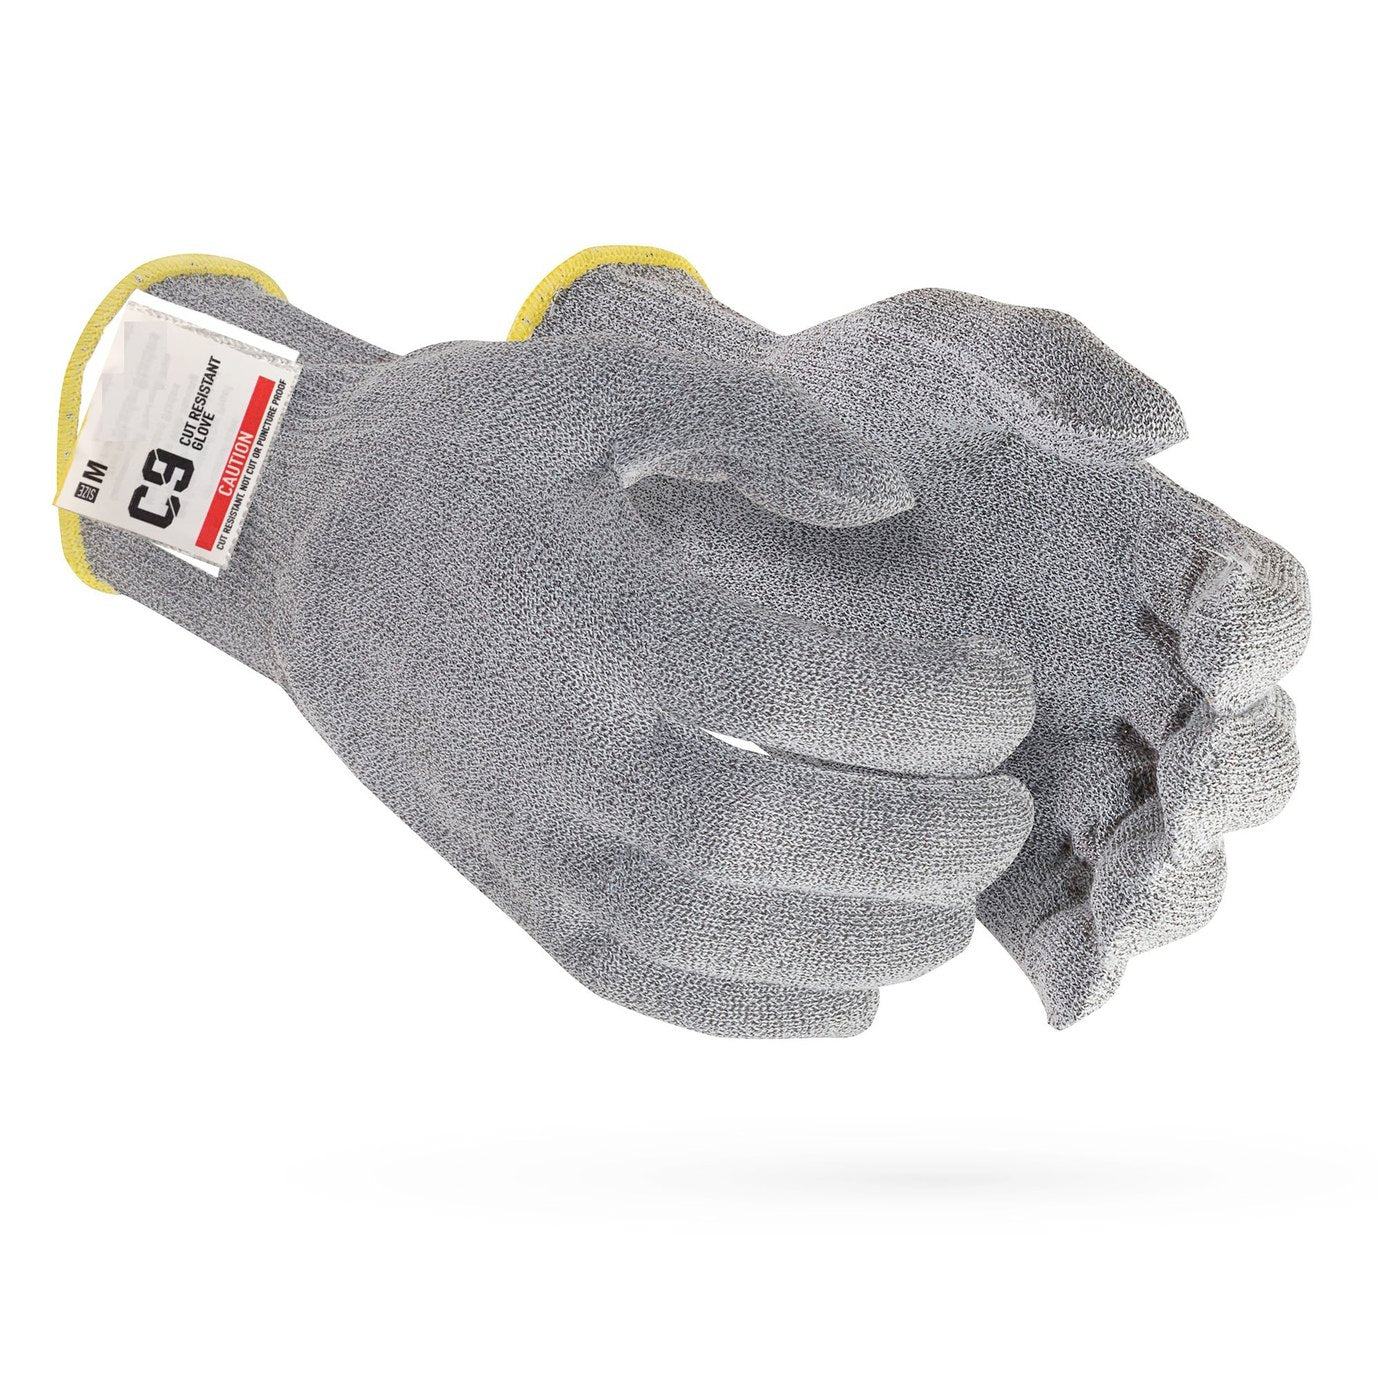 Cut Resistant & Steel Mesh Gloves